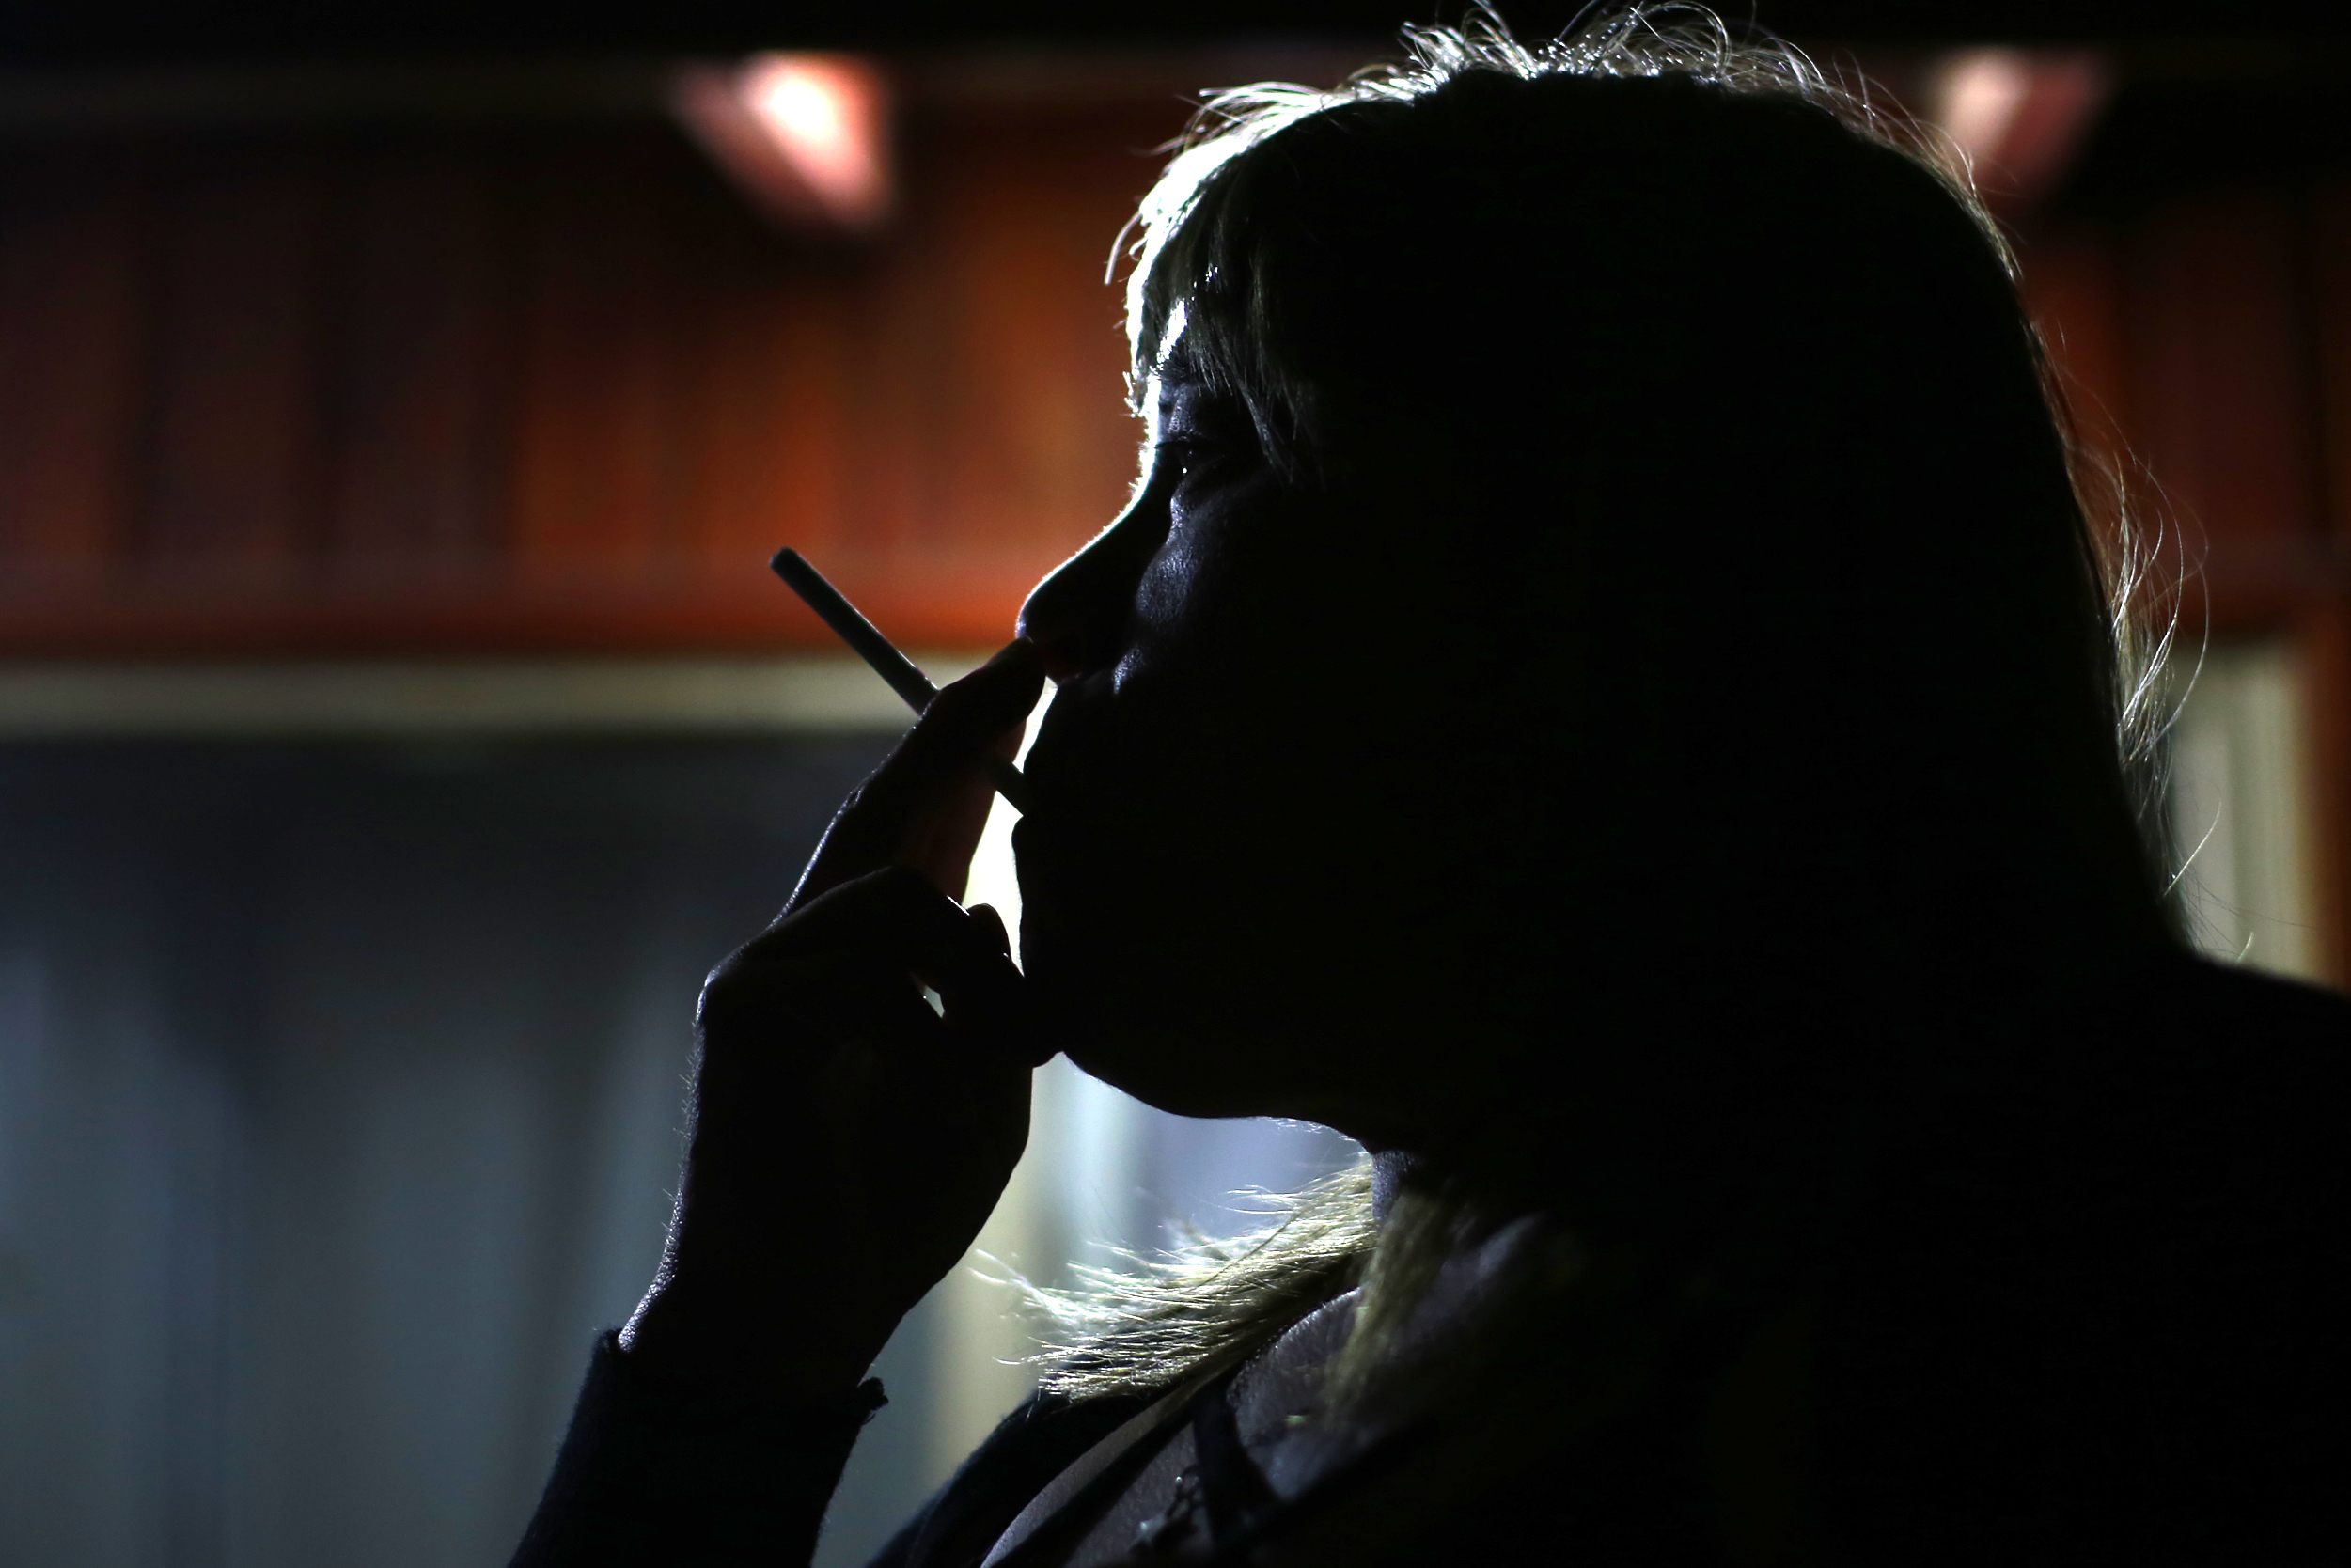 Minsal Aclara Que Cigarrillos Seguiran Siendo Productos Escenciales